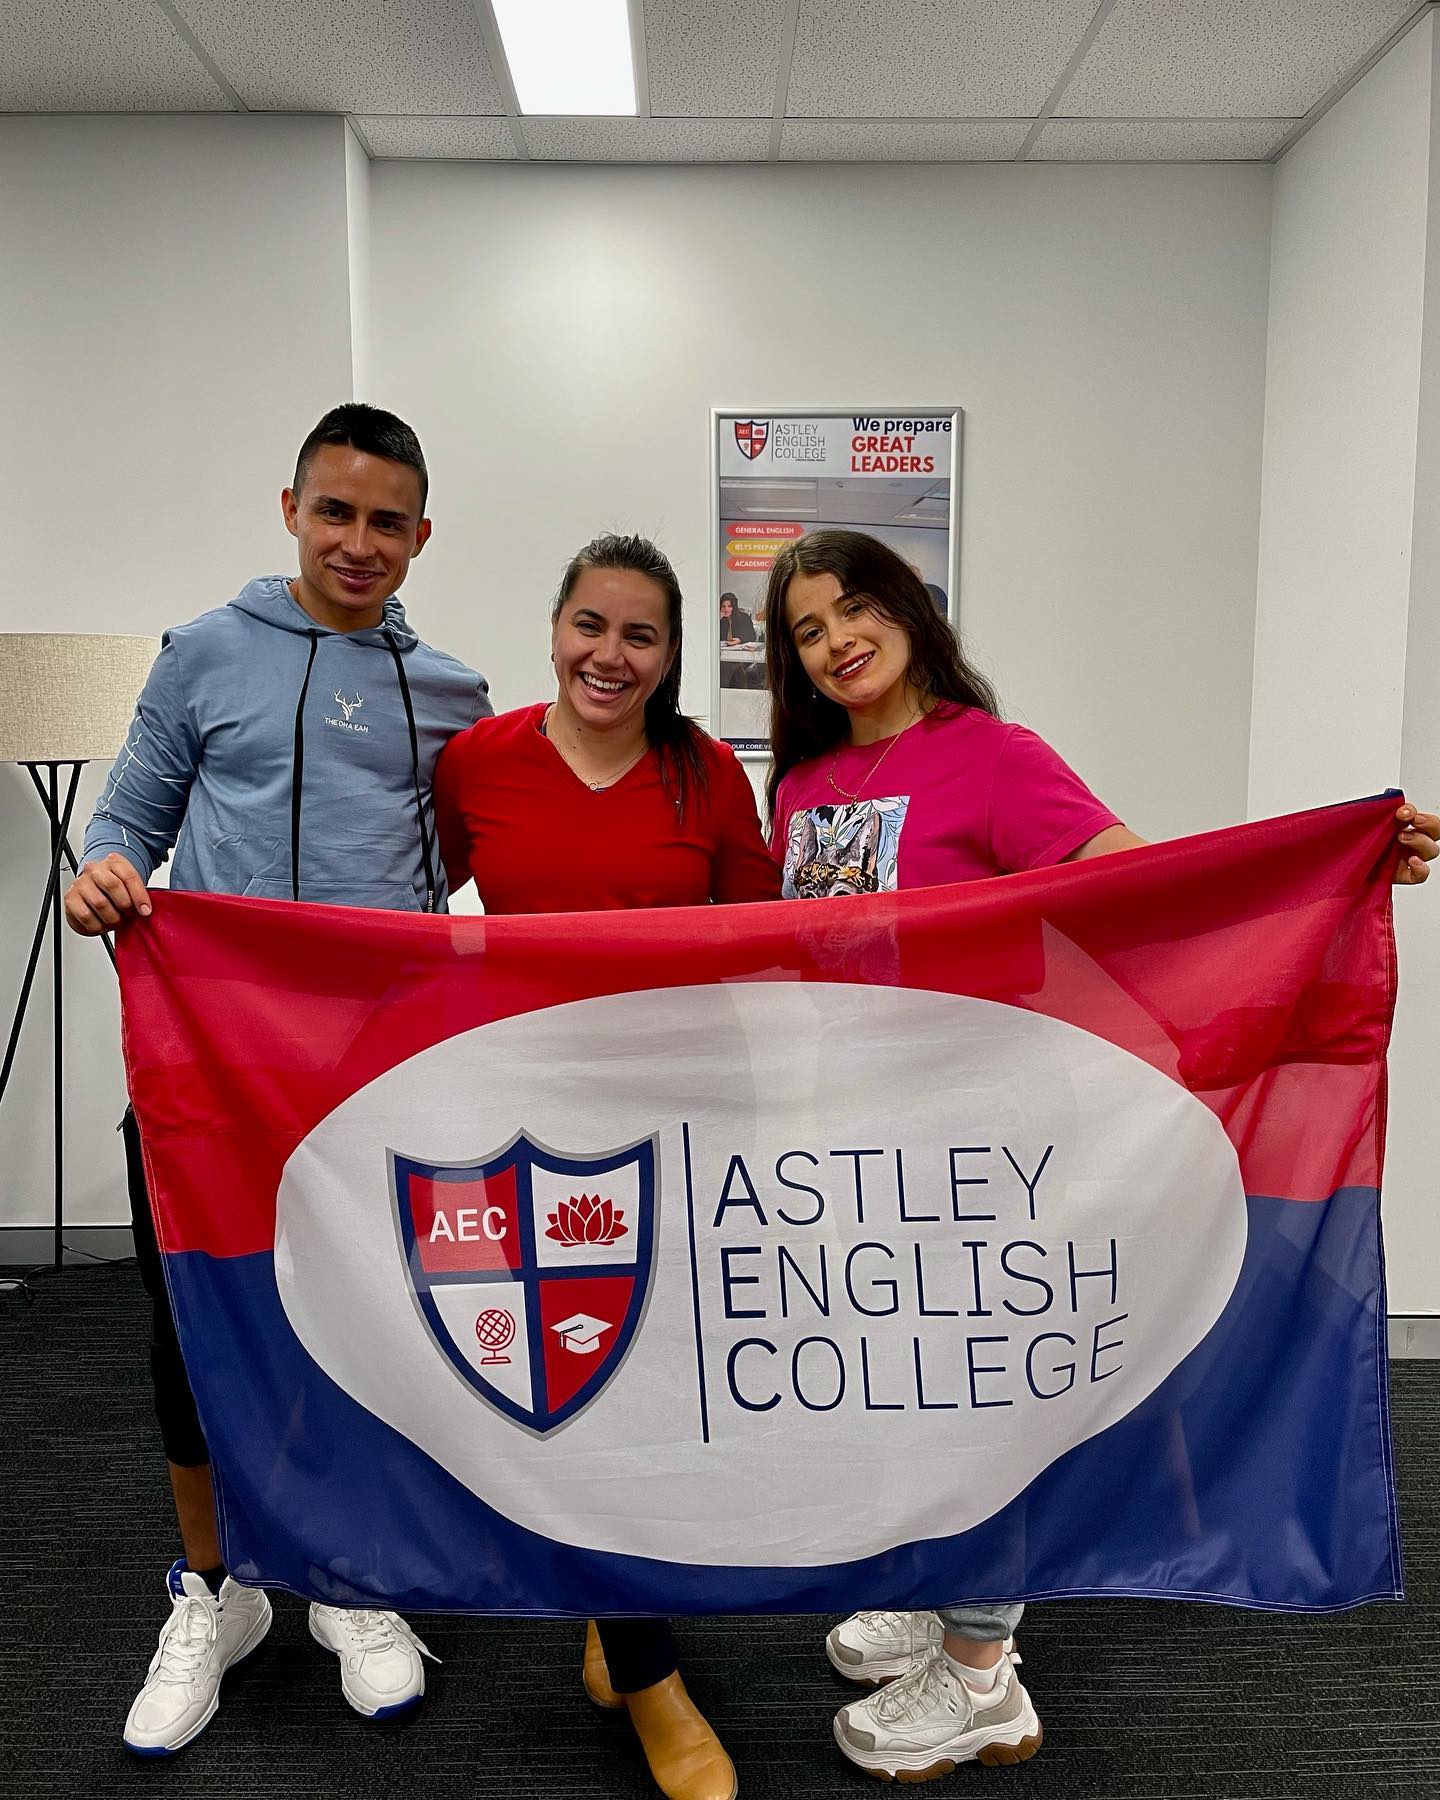 Astley English College - アストリー・イングリッシュ・カレッジの生徒たち